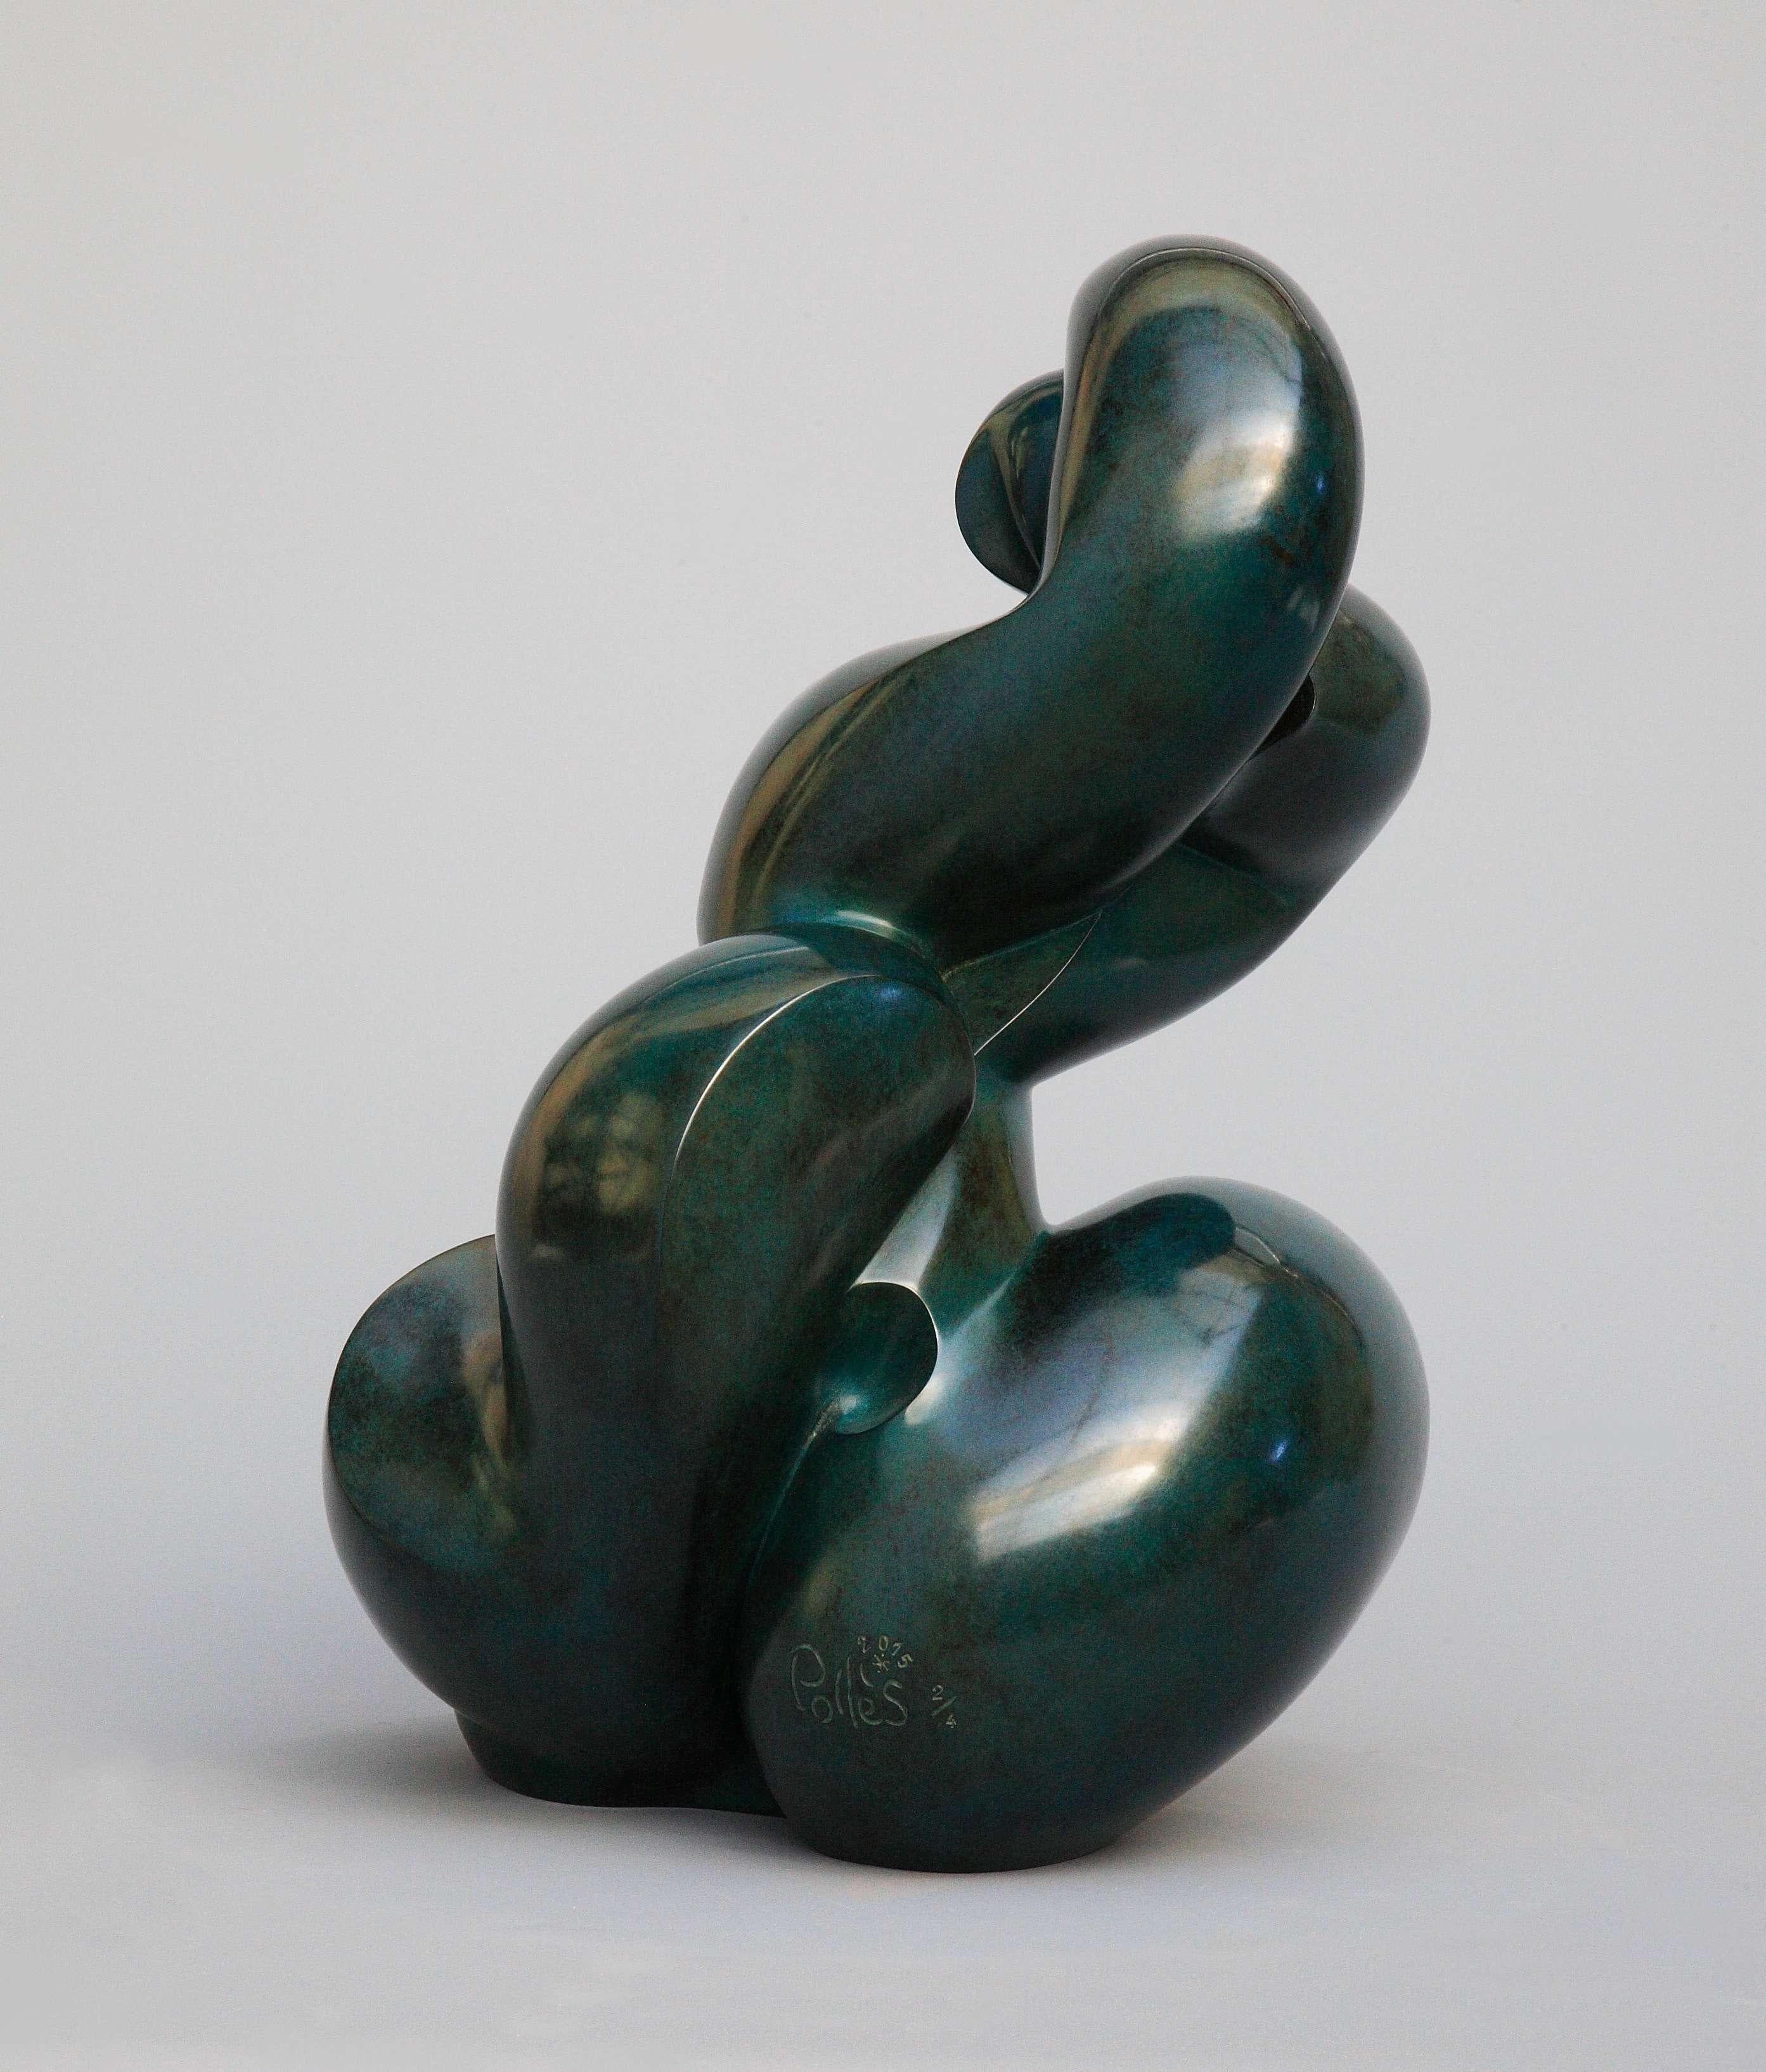 Pollès - Bronze-Skulptur - Extalina
Bronze
2/4
Erstellt im Jahr 2015, gecastet im Jahr 2015
39 x 28 x 24 cm
Signiert und nummeriert

BIOGRAPHIE
Pollès wurde 1945 in Paris geboren
Wie Leonard de Vinci auf der Suche nach anatomischer Perfektion, nach